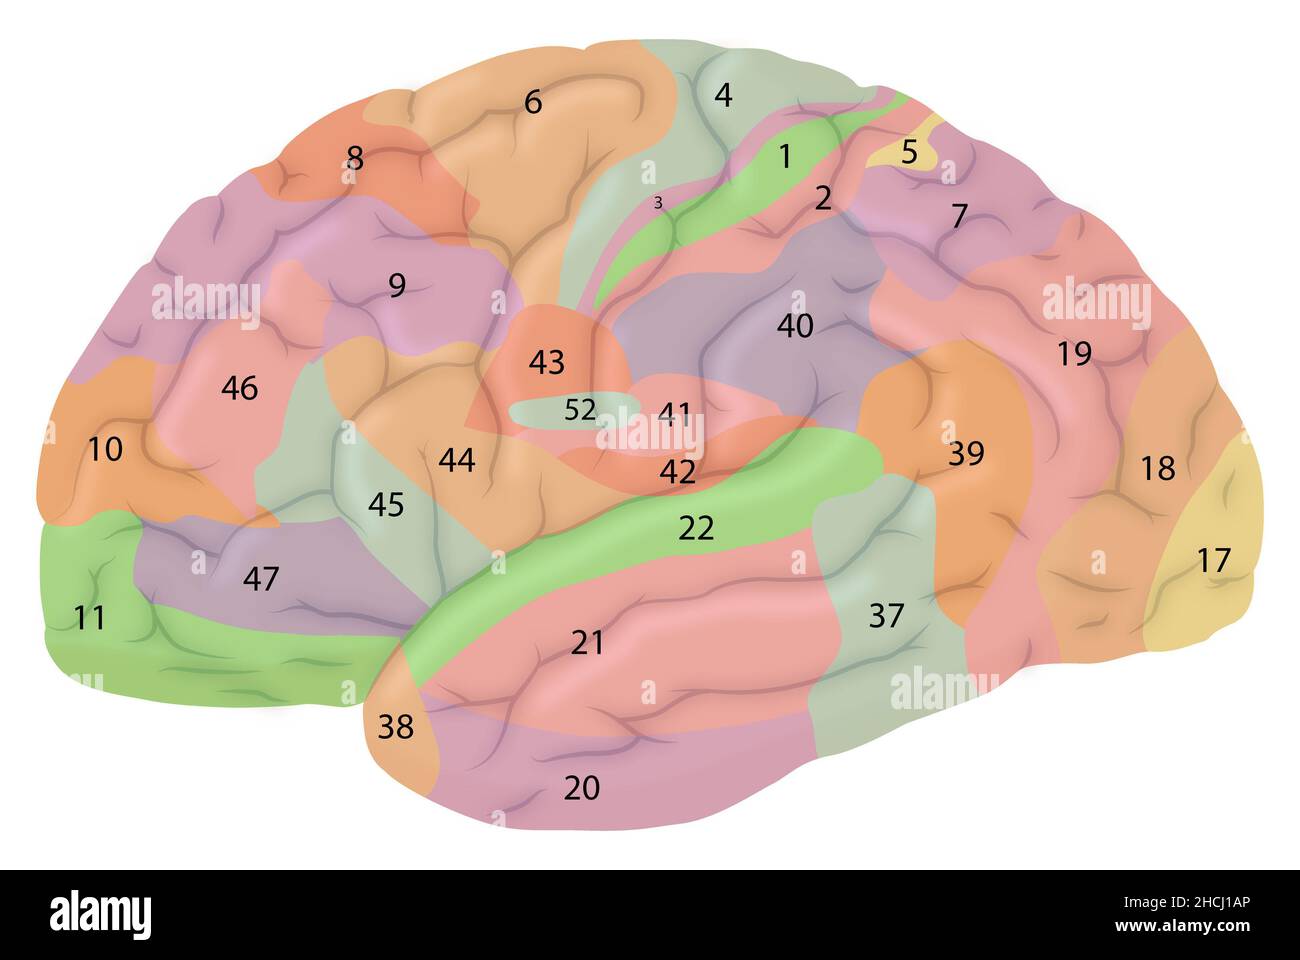 Laterale Ansicht des Gehirns mit Brodmann-Arealen Stockfoto